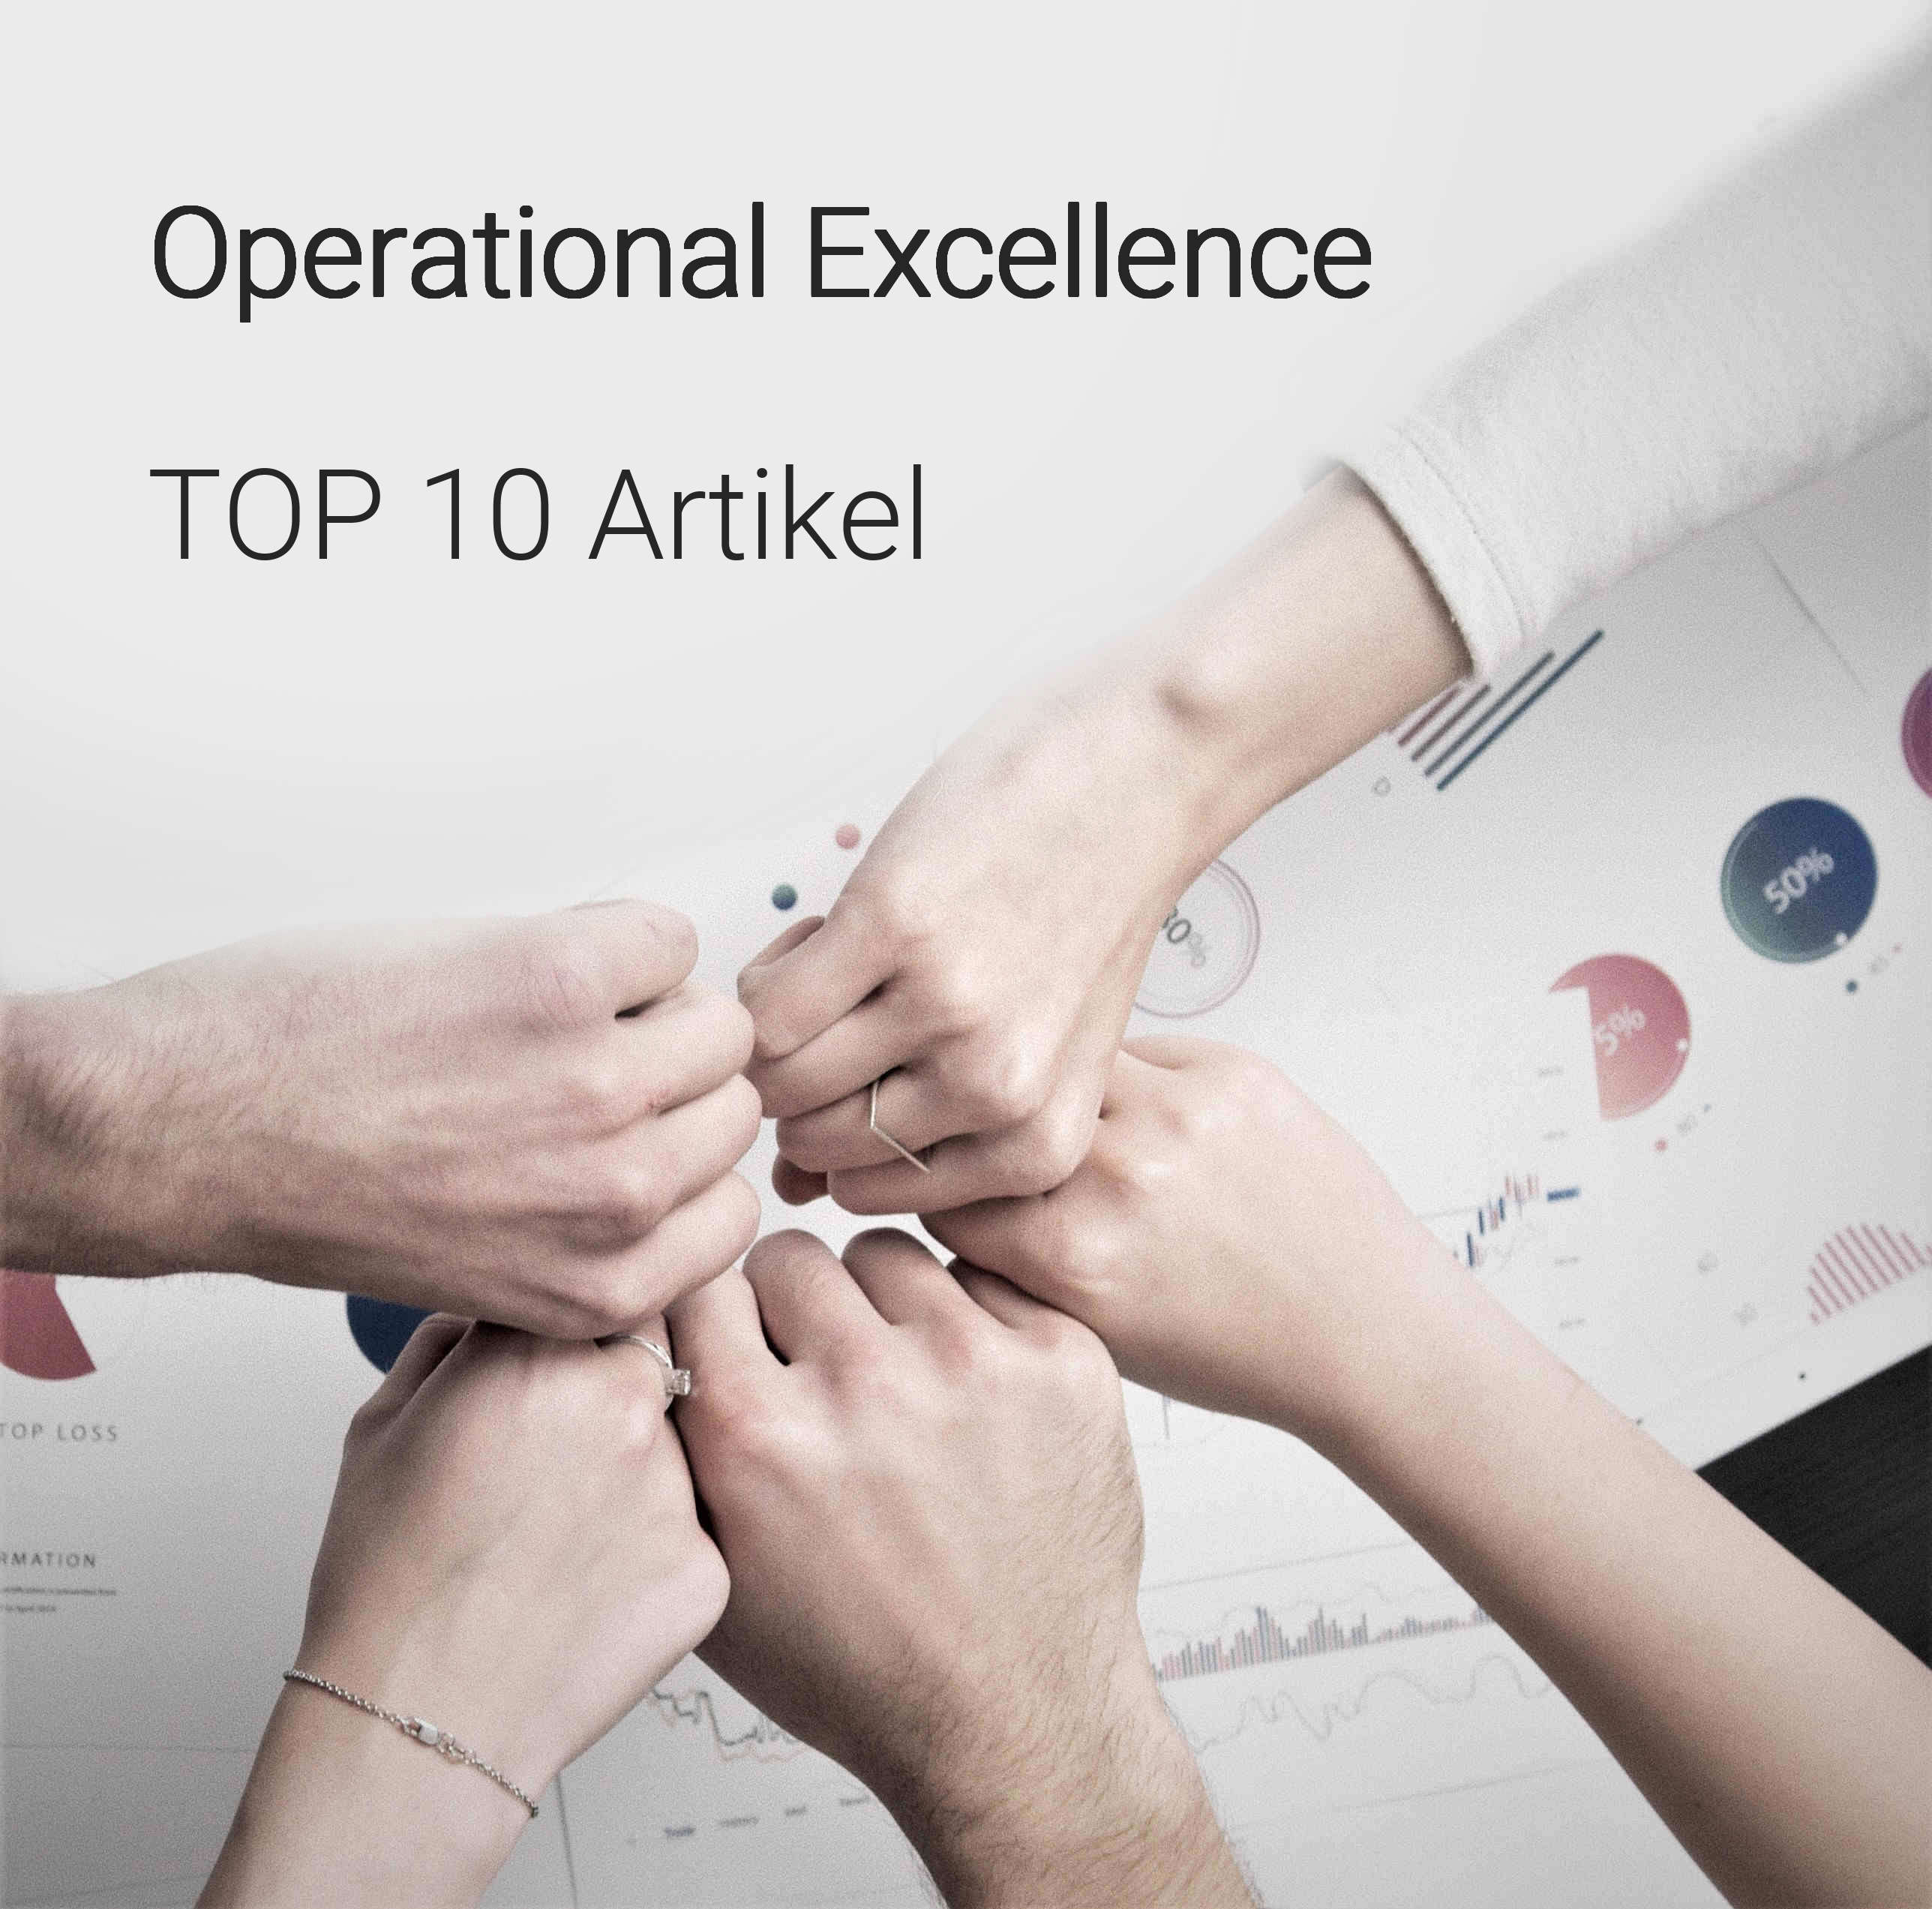 Erfolgsfaktor Operational Excellence (OpEx): Effizienz, Qualität und Kundenzufriedenheit auf höchstem Niveau. Erfahren Sie die Wahrheit über Operational Excellence und lassen Sie sich von konkreten Beispielen inspirieren.